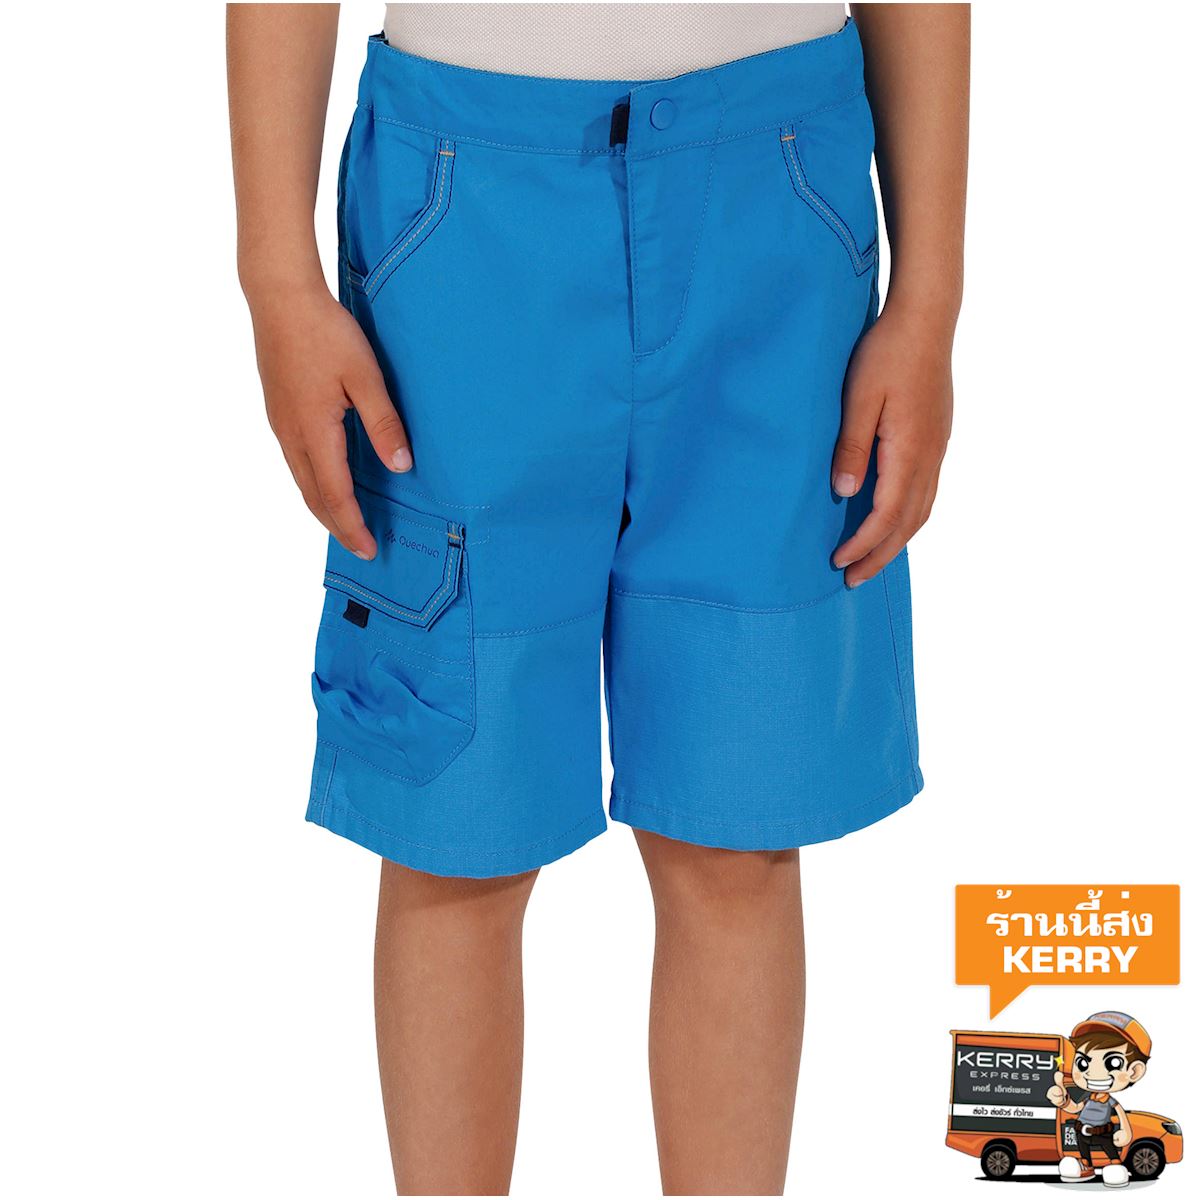 กางเกงขาสั้นเพื่อการเดินป่าสำหรับเด็กรุ่น MH500 (สีฟ้า) เด็กผู้ชาย 4 ถึง 16 ปี กางเกงขาสั้น เสื้อผ้า เดินป่า